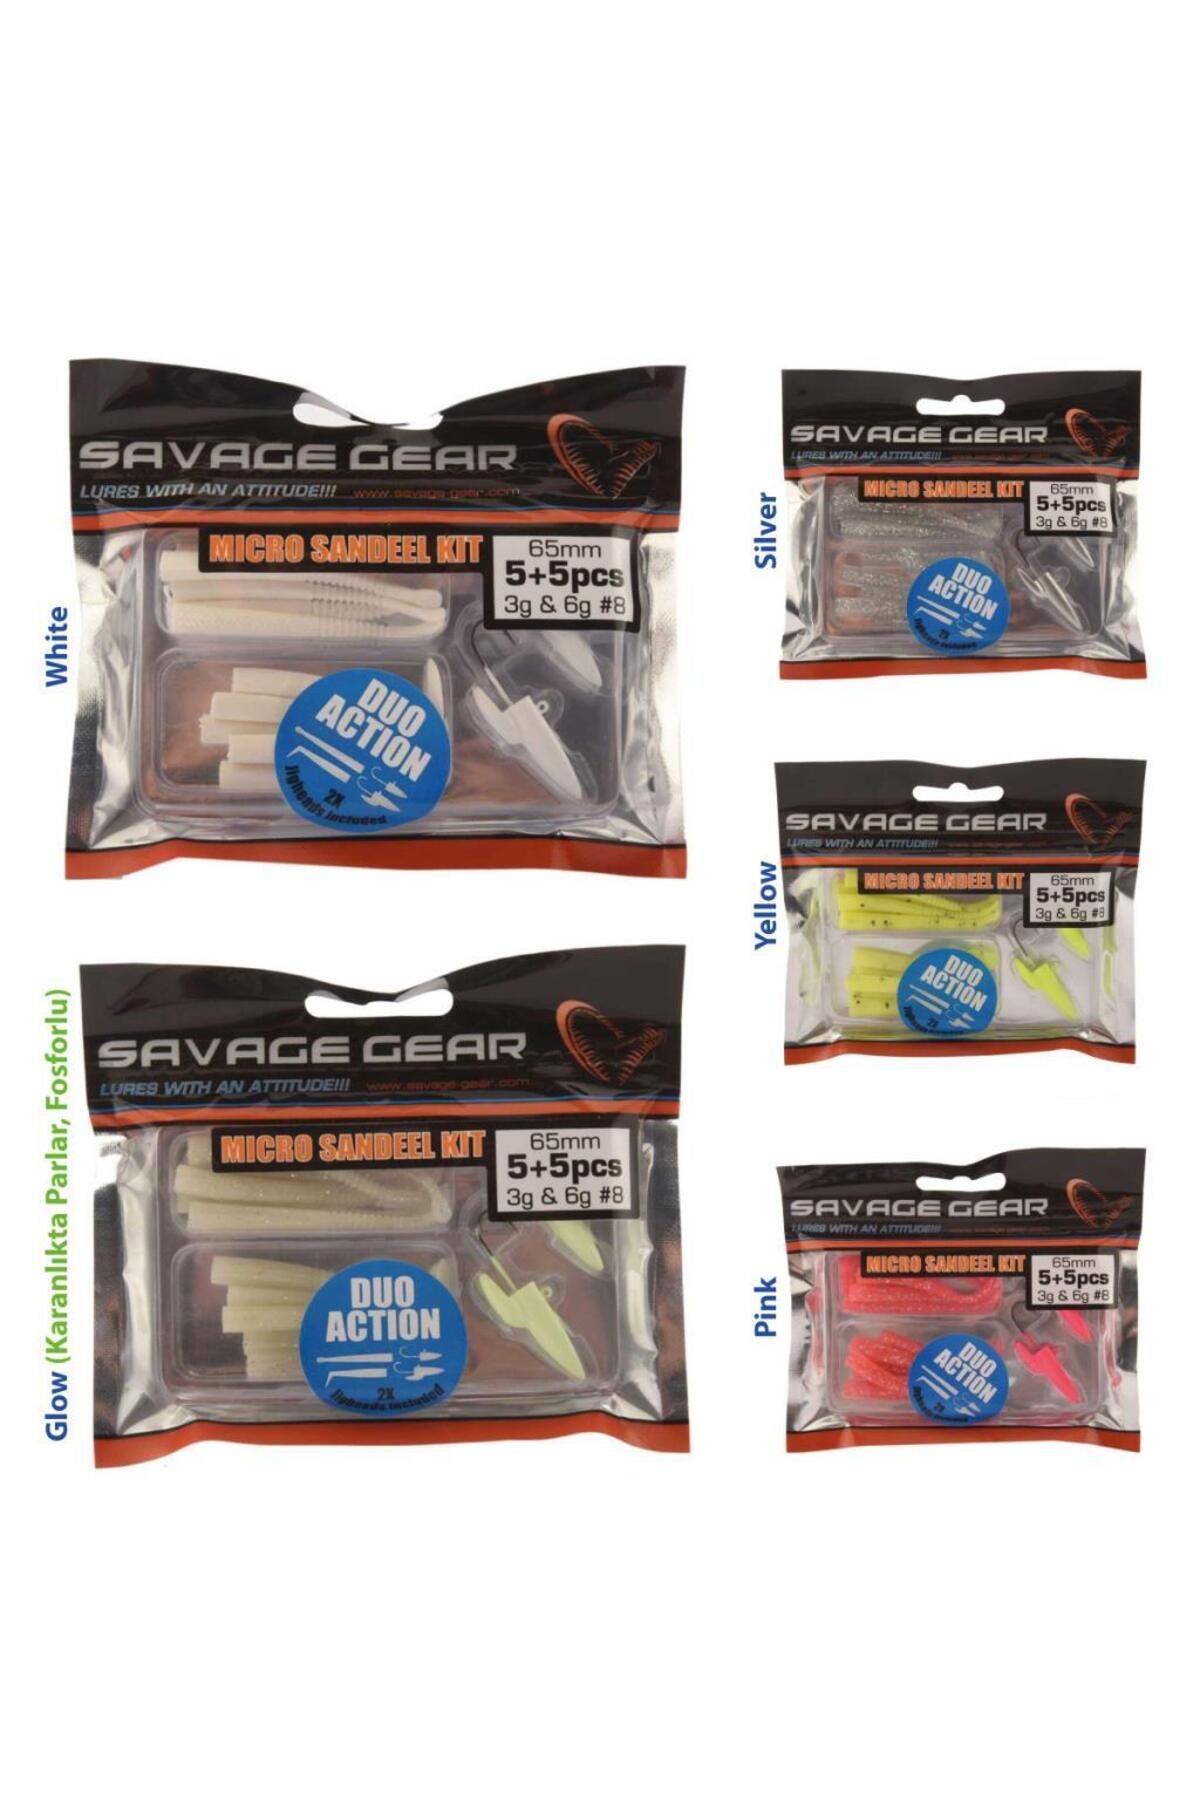 Savage Gear Lrf Micro Sandeel Kit (2 JİGHEAD 10 SİLİKON) Yem Seti White